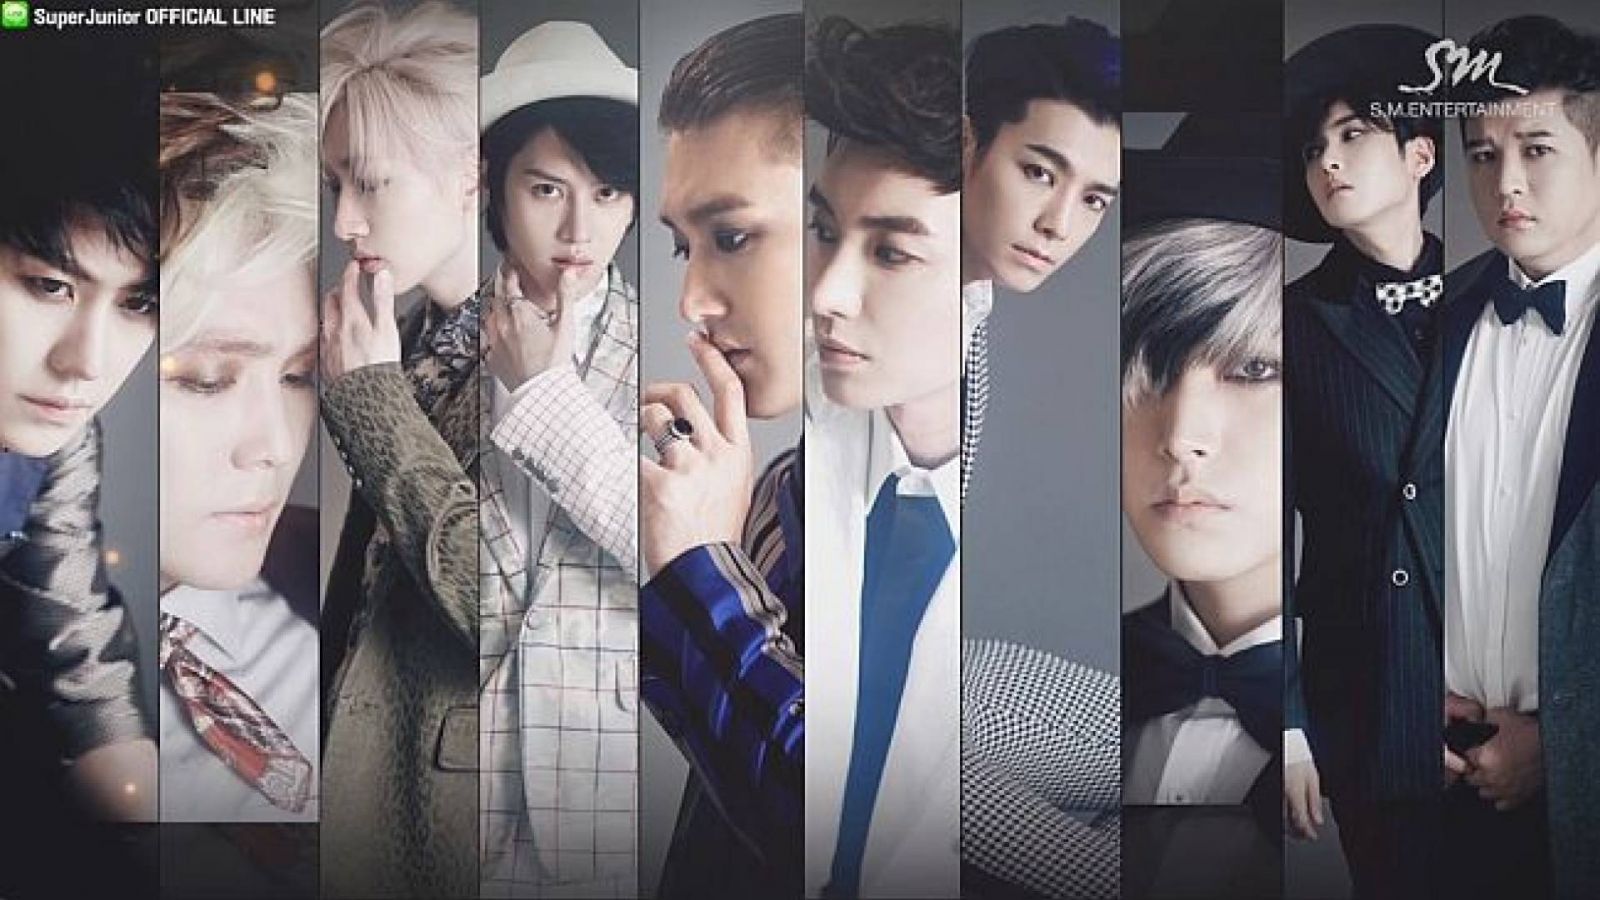 Super Junior lançará álbum especial © SM Entertainment, Super Junior OFFICIAL LINE